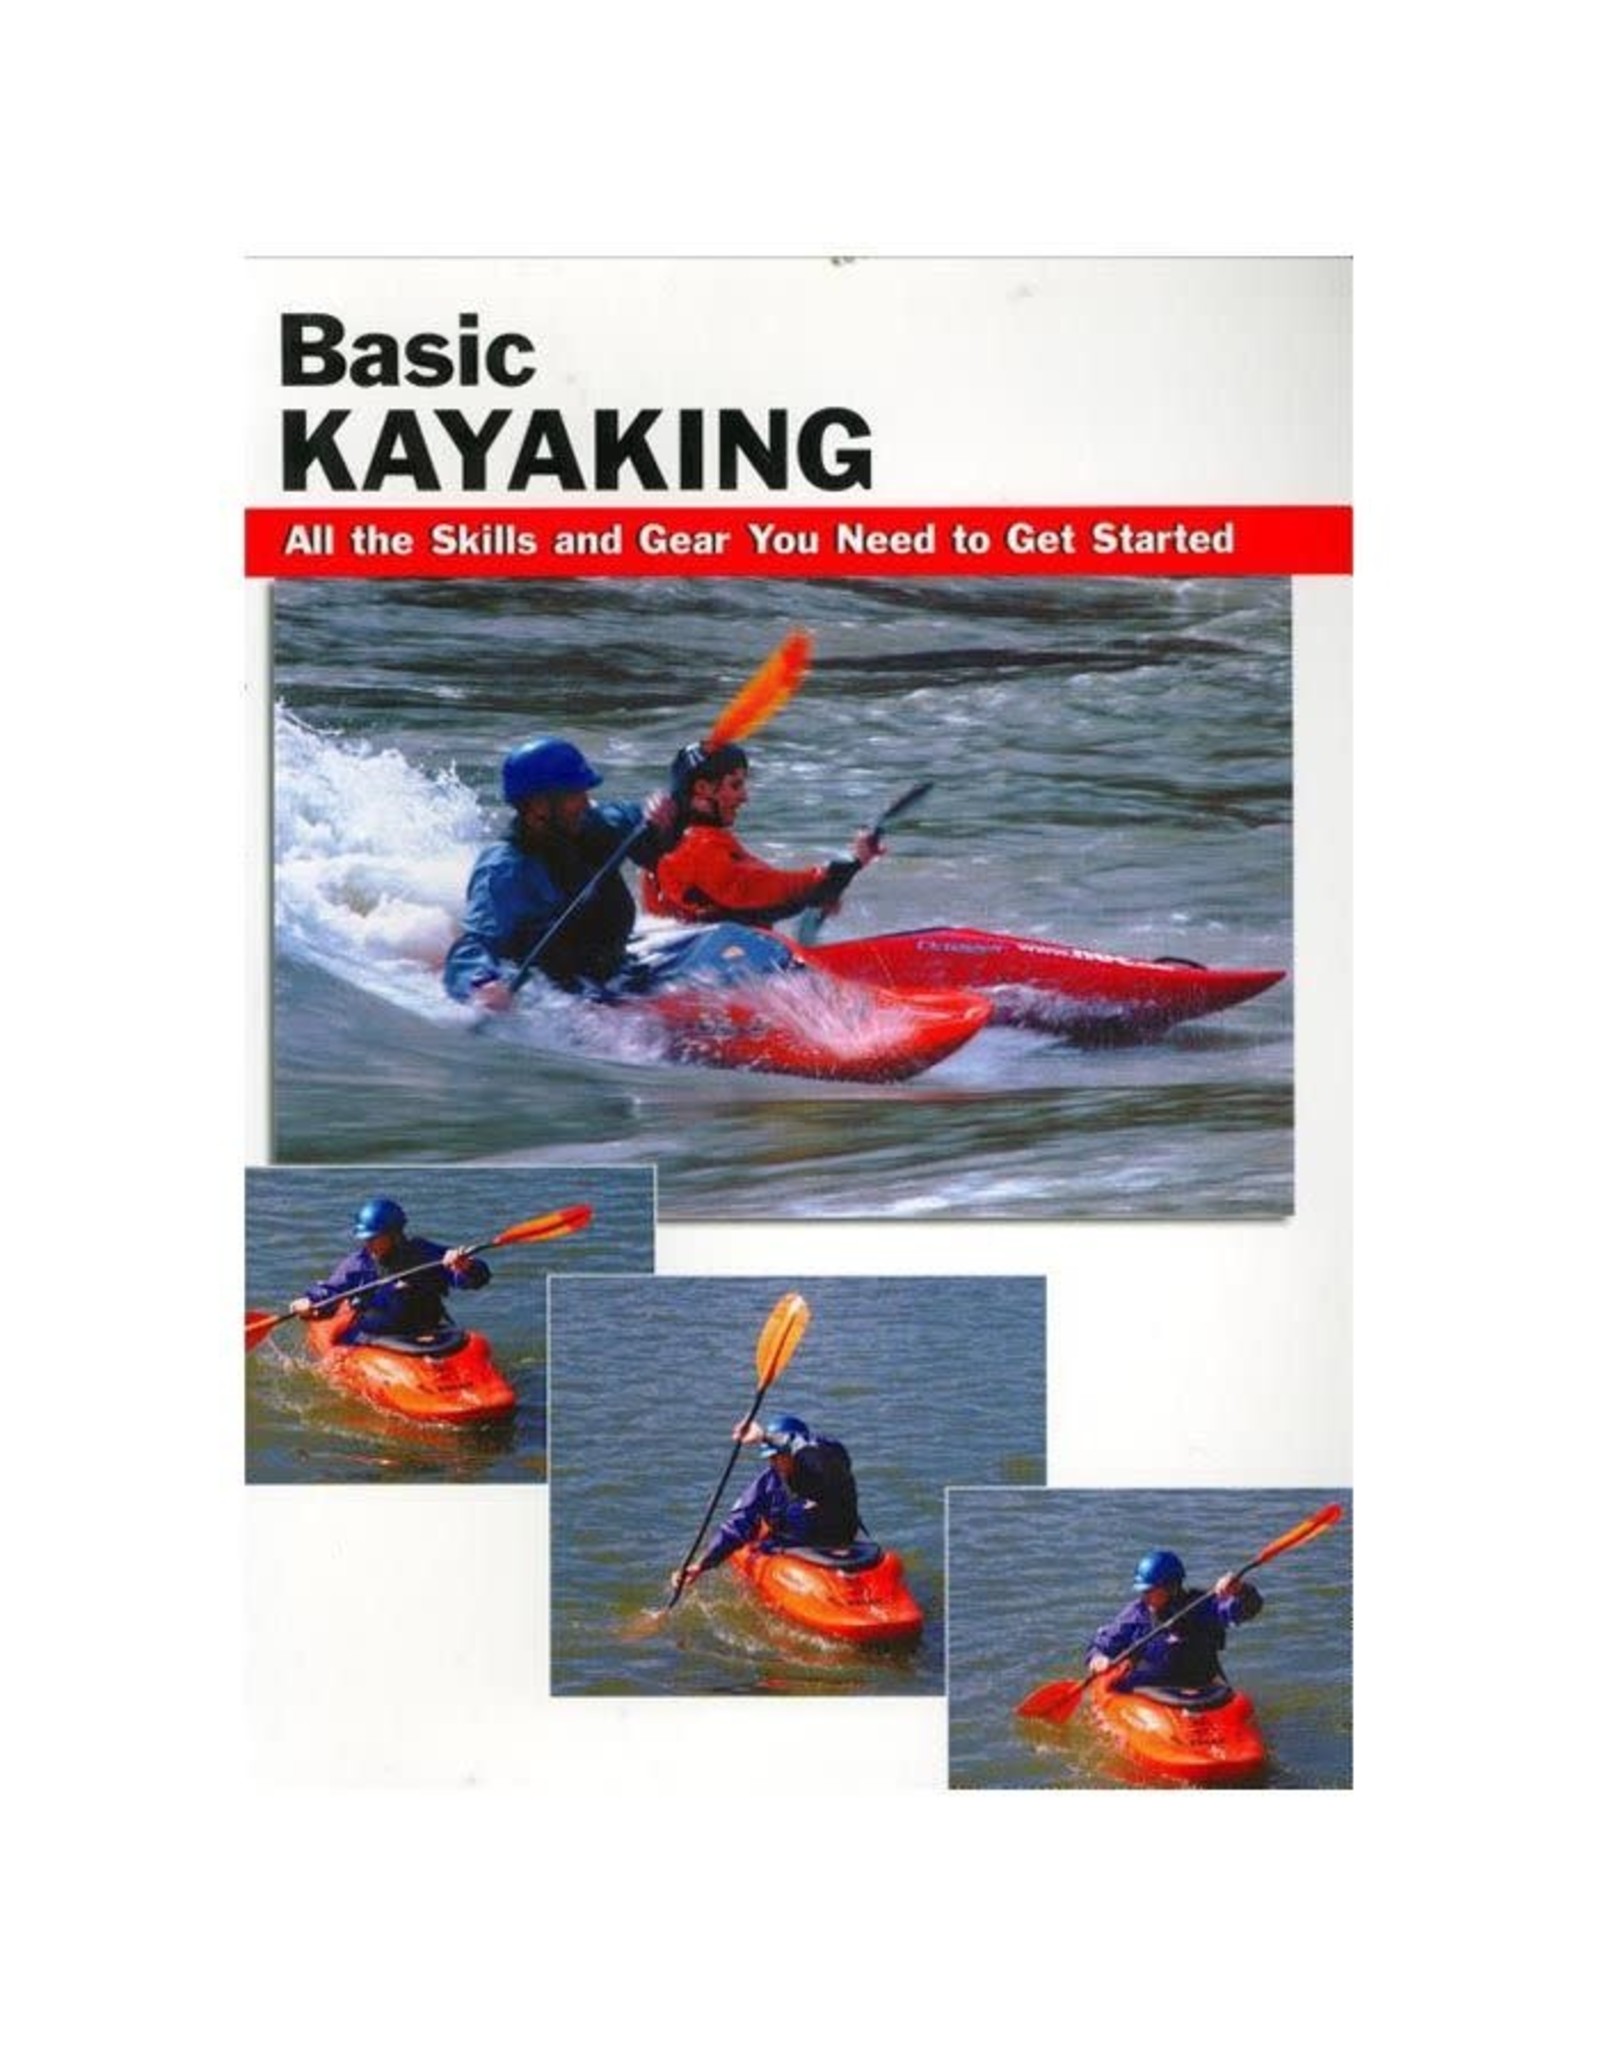 Basic Kayaking by Jon Rounds & Wayne Dickert